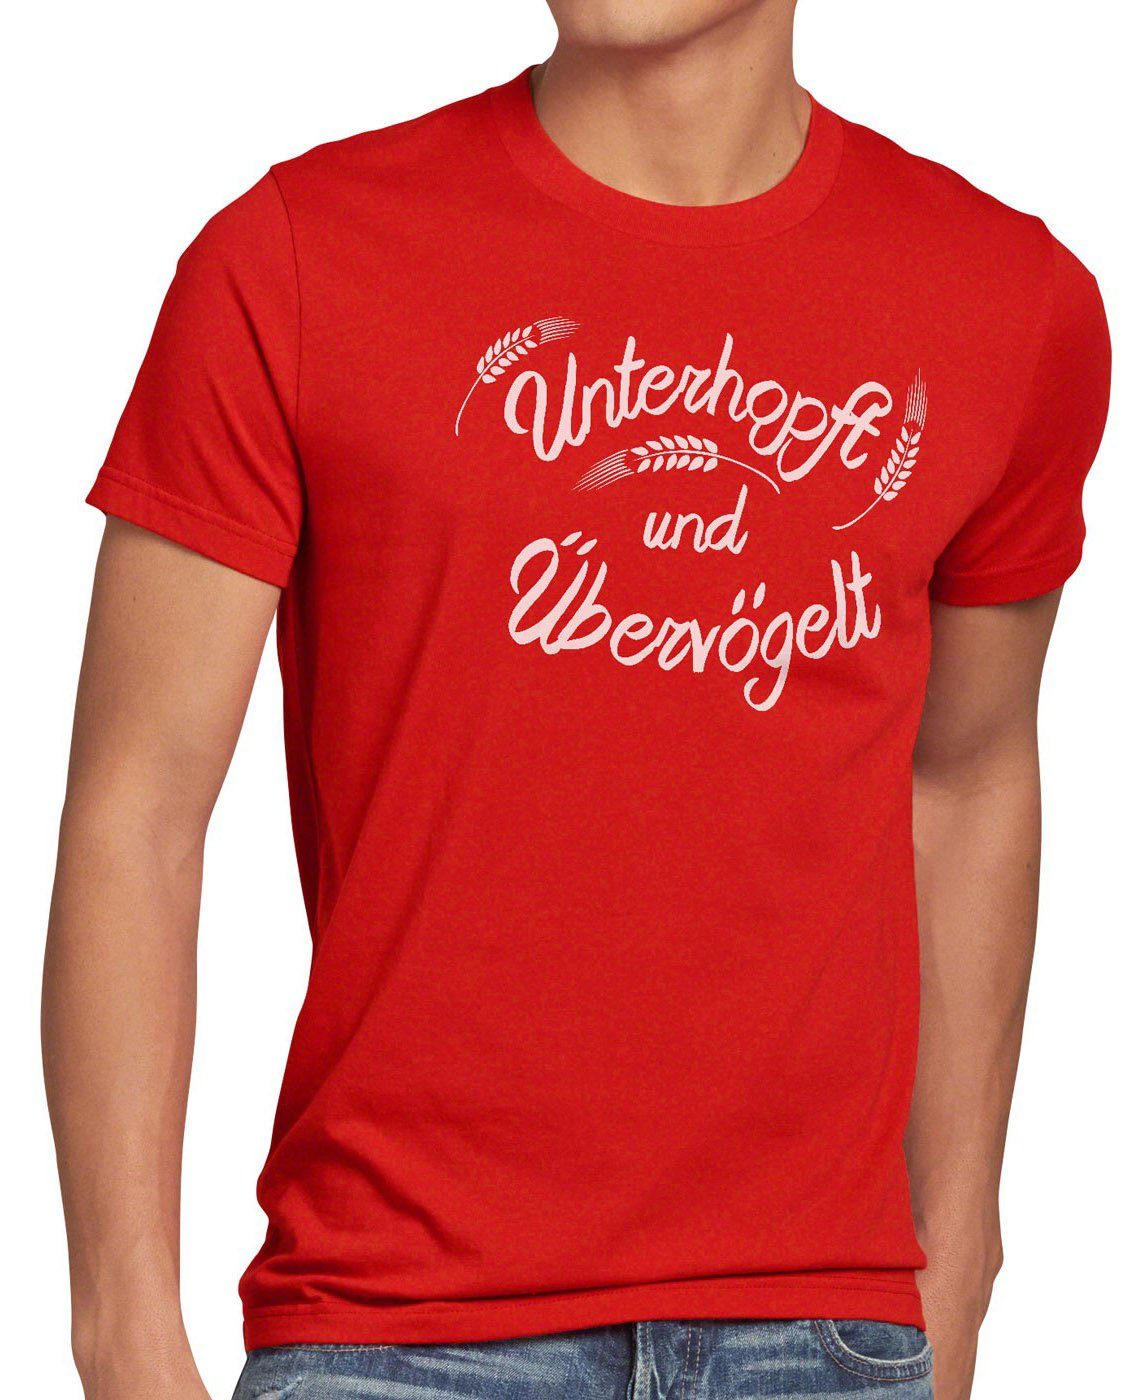 style3 Print-Shirt Herren T-Shirt Unterhopft Übervögelt Kult Shirt Funshirt Spruch Bier Malz Fun rot